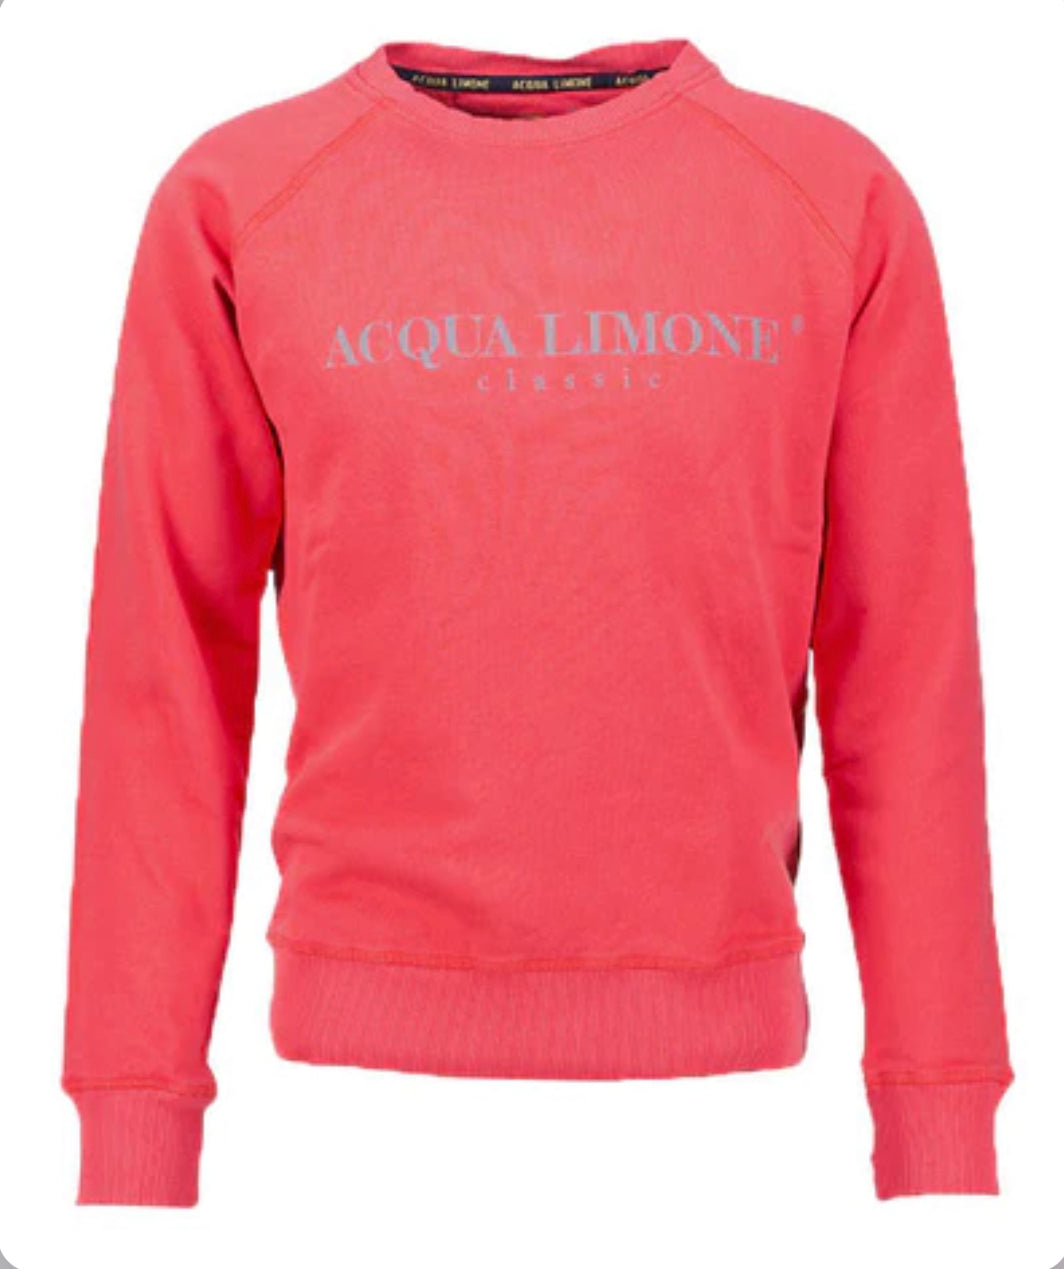 Acqua Limone - College Classic - tru red - 101 rib